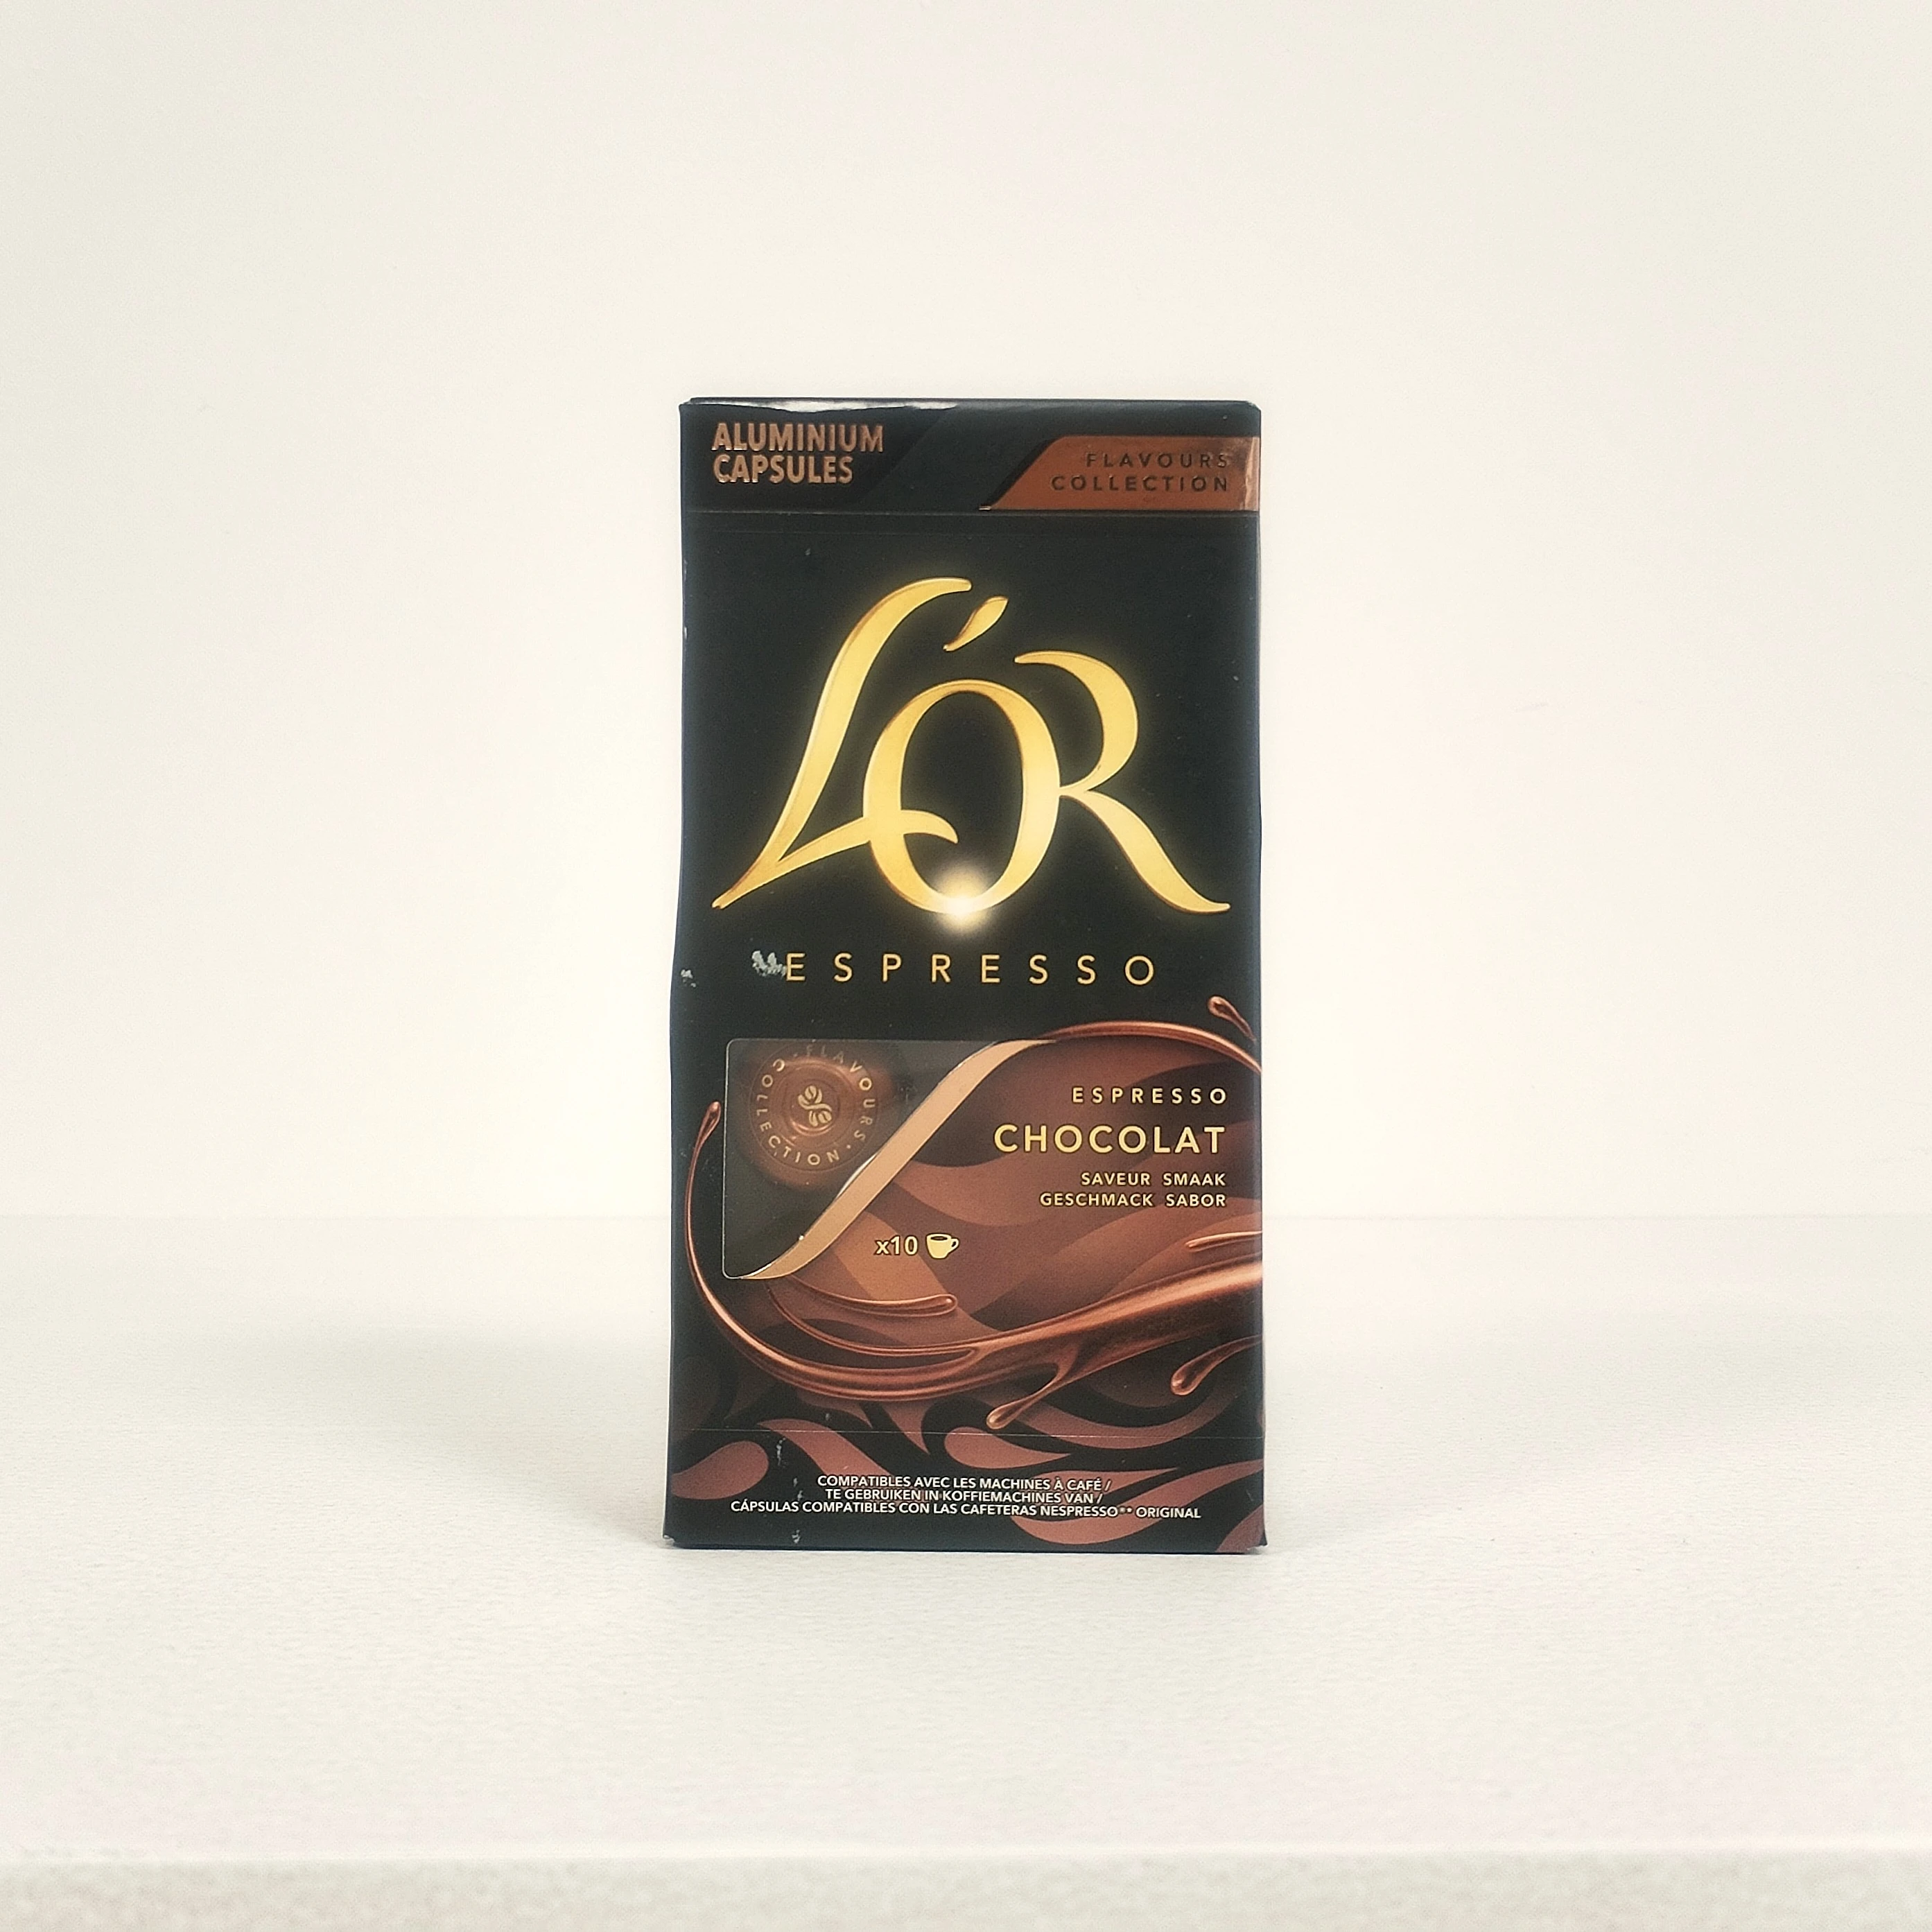 1904-lor-nespresso-espresso-chocolate-10br-1720685606275.jpg